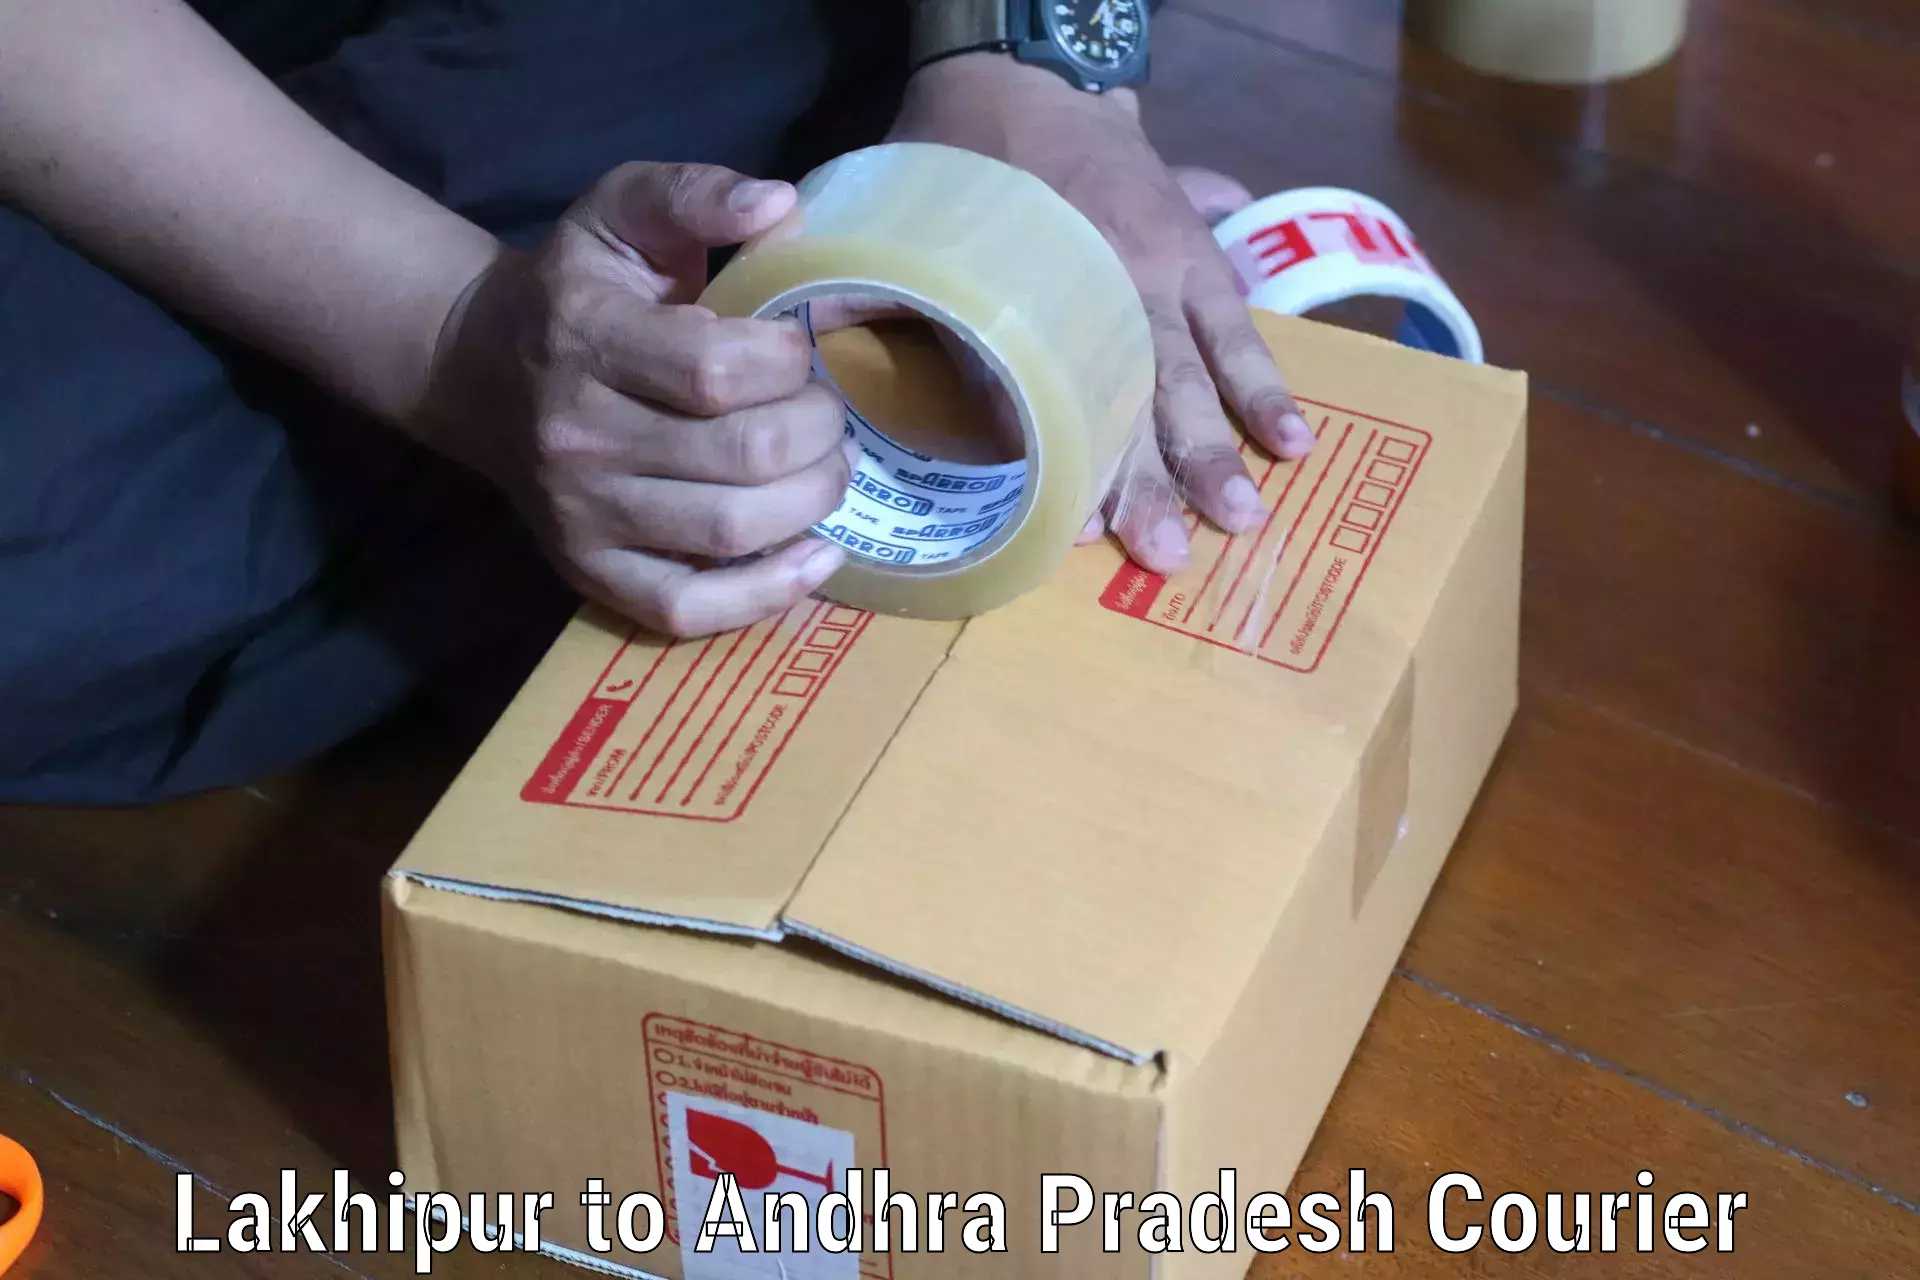 Courier service efficiency in Lakhipur to Jinnuru